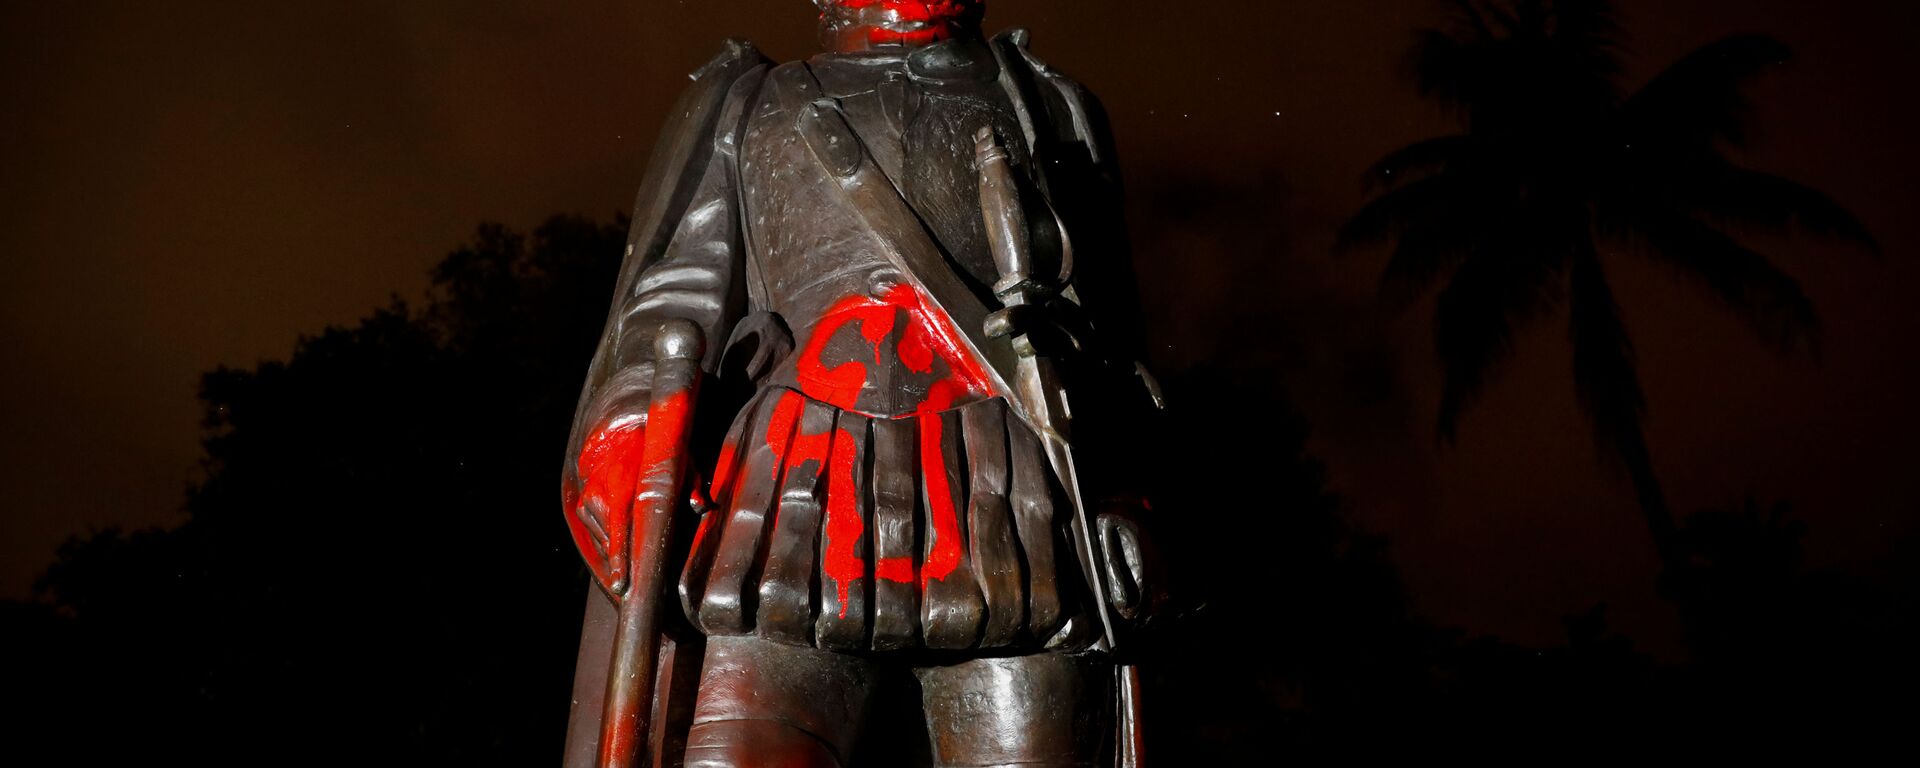 Оскверненная статуя Христофора Колумба,  Майами, штат Флорида, США - Sputnik Латвия, 1920, 22.06.2020